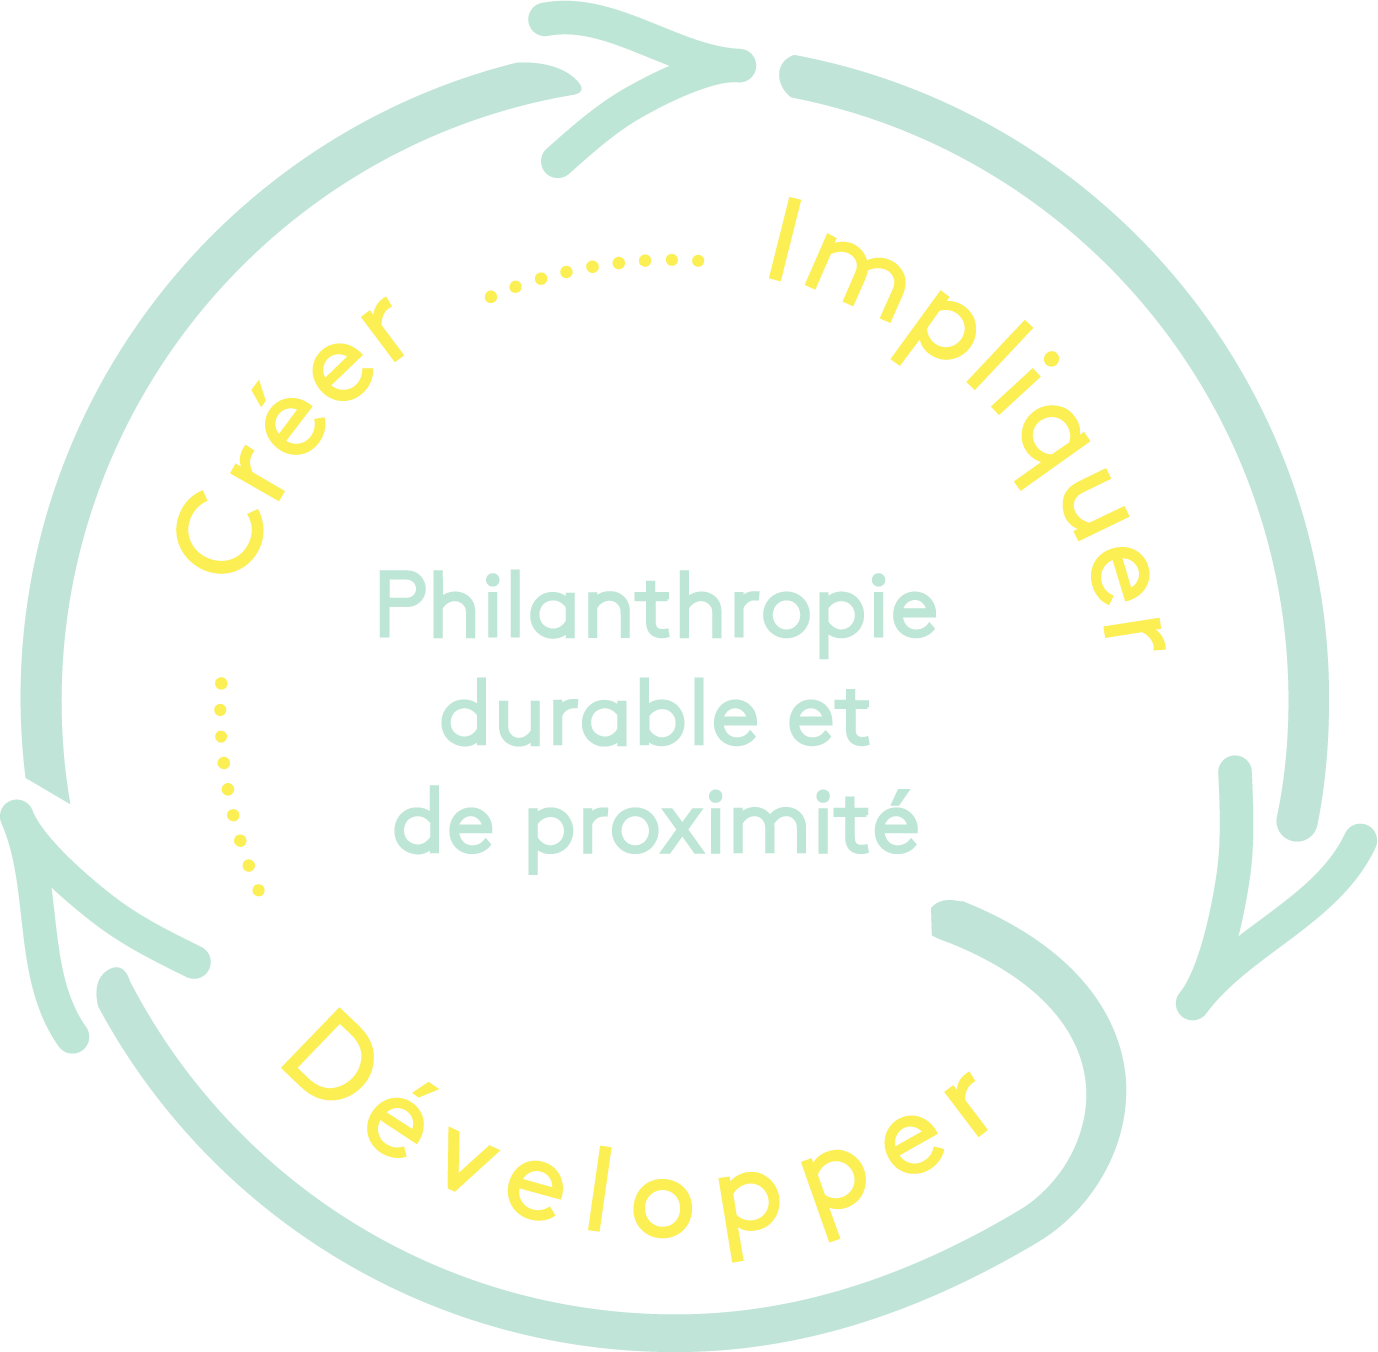 Boucle de la philanthropie durable et de proximité en trois étapes: Développer, créer et impliquer